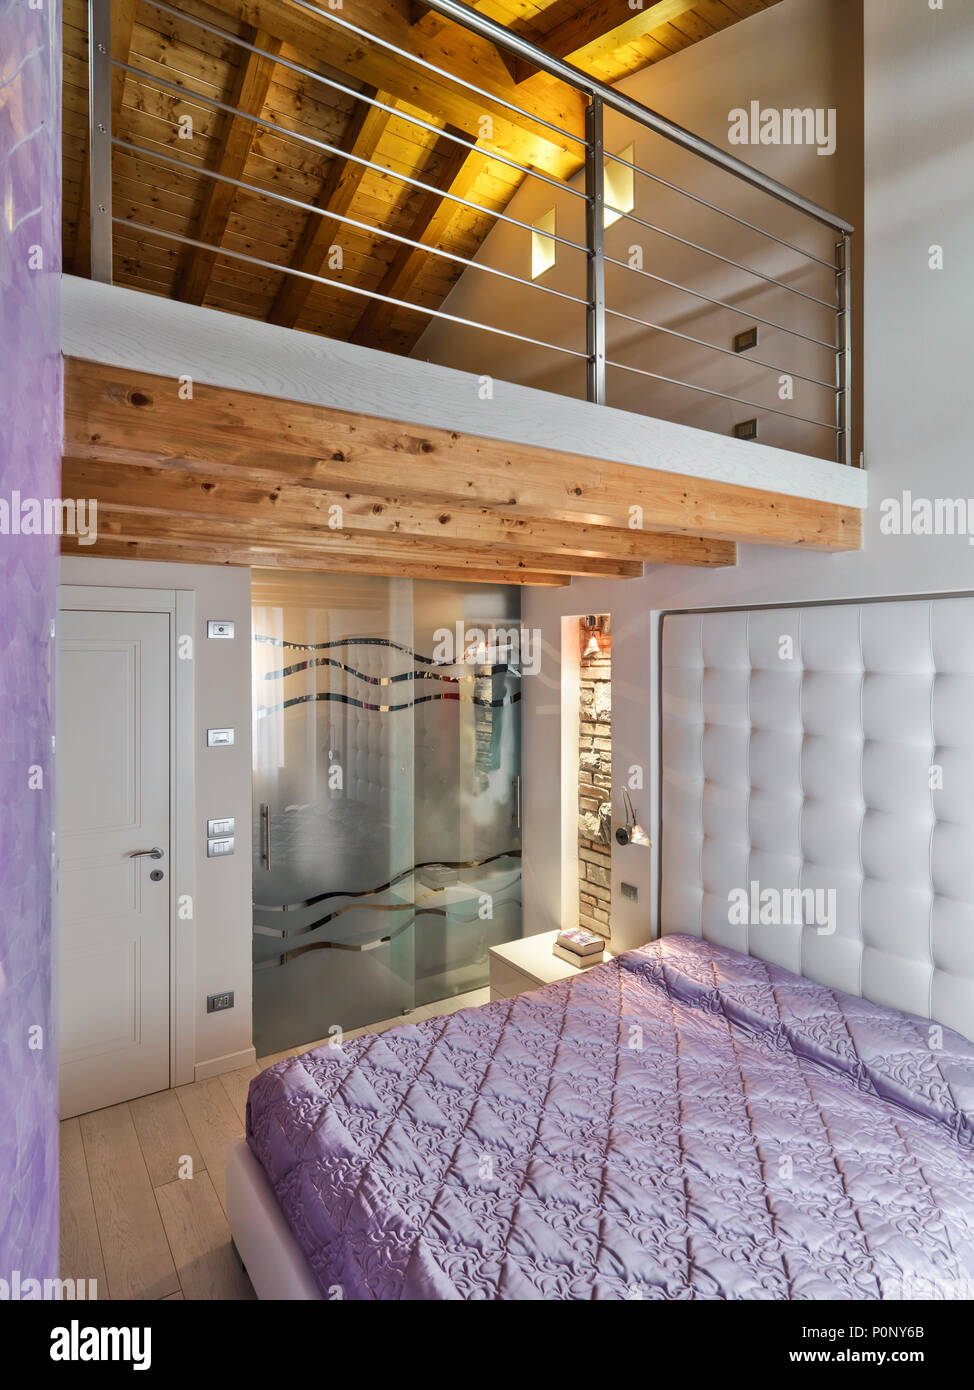 Moderno interiore camera da letto in mansarda camera con soppalco Foto  stock - Alamy